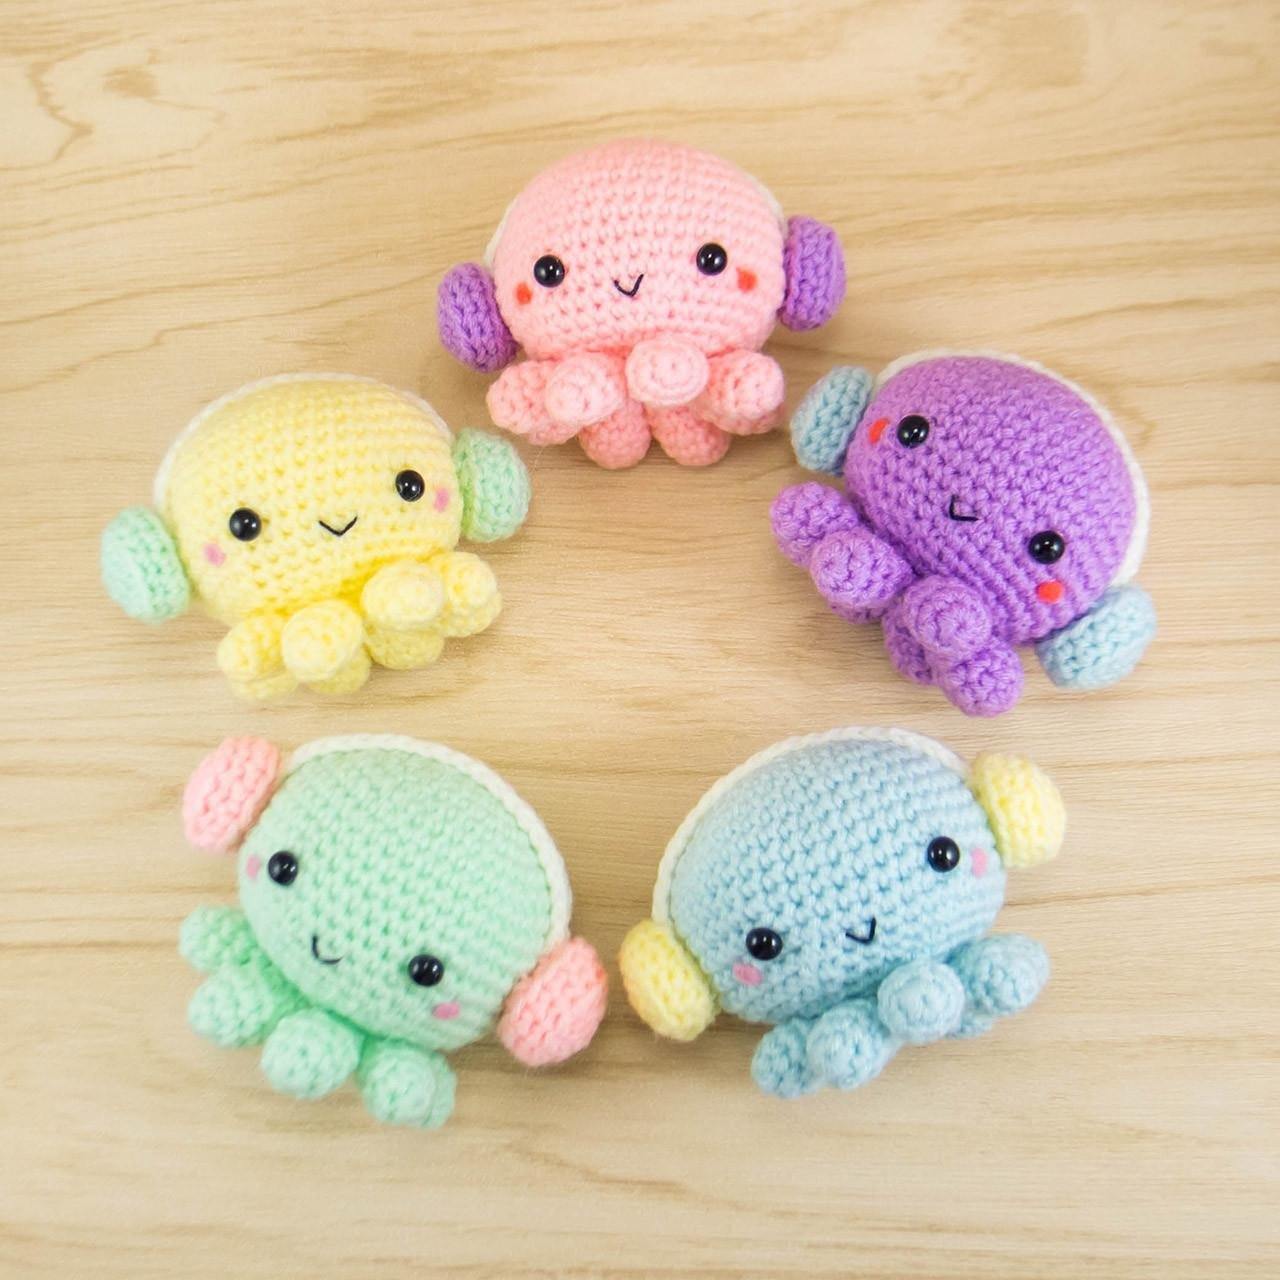 Crochet octopus with headphones